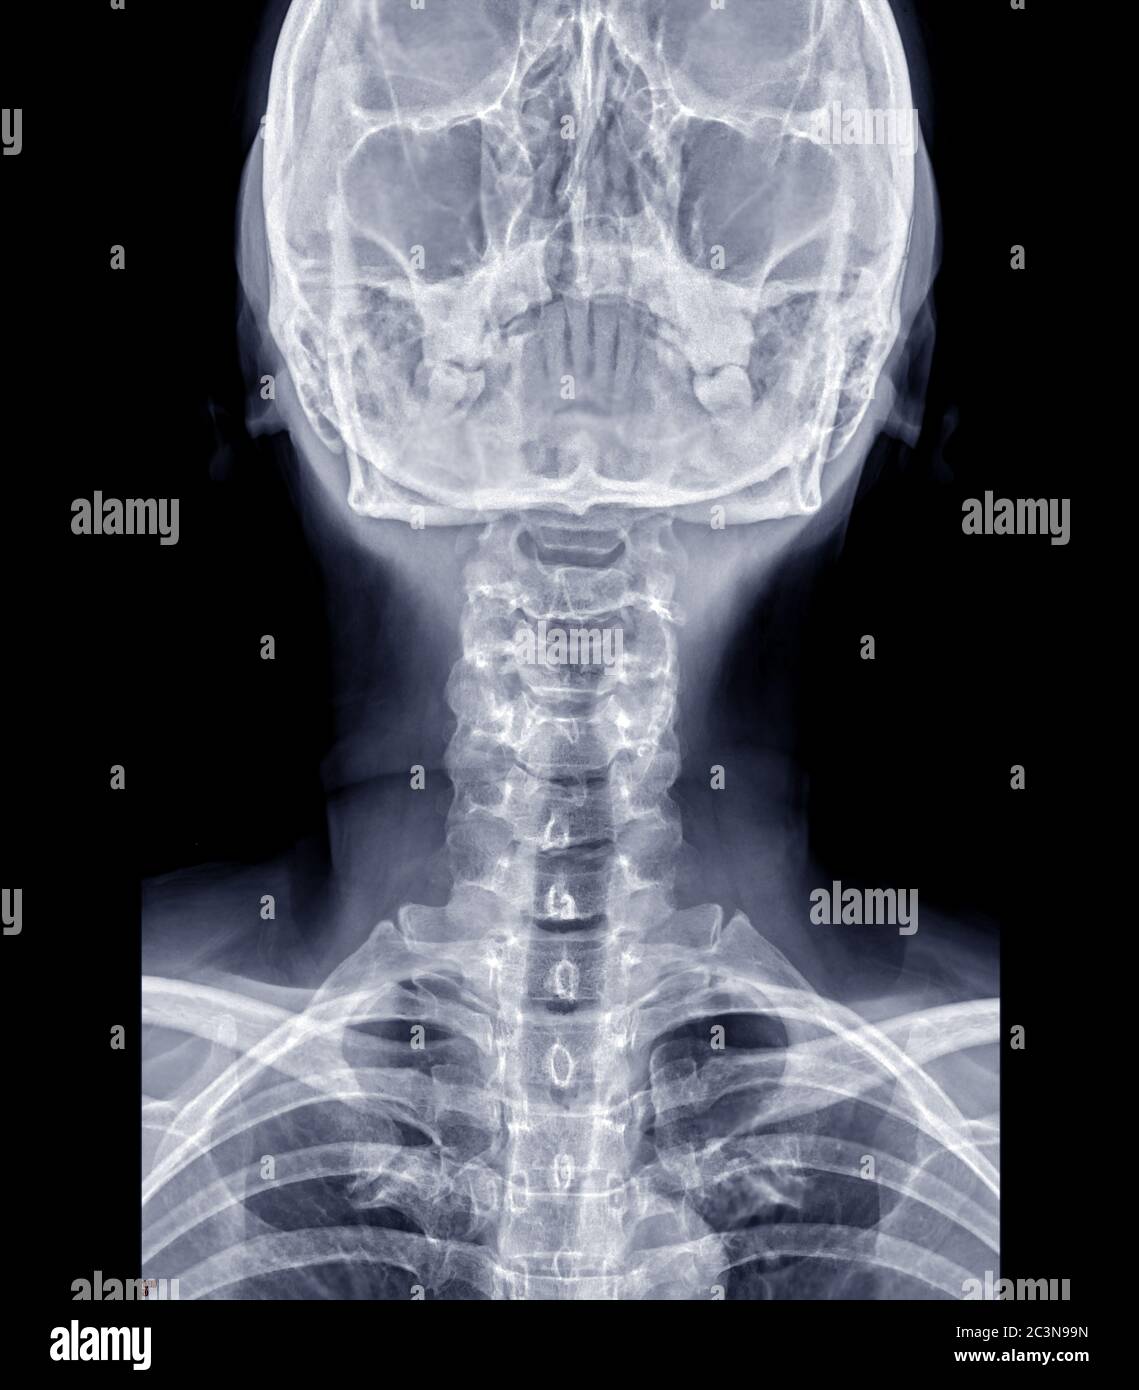 Immagine radiografica della colonna C o radiografica della colonna cervicale AP per l'erniazione diagnostica intervertebrale del disco. Foto Stock